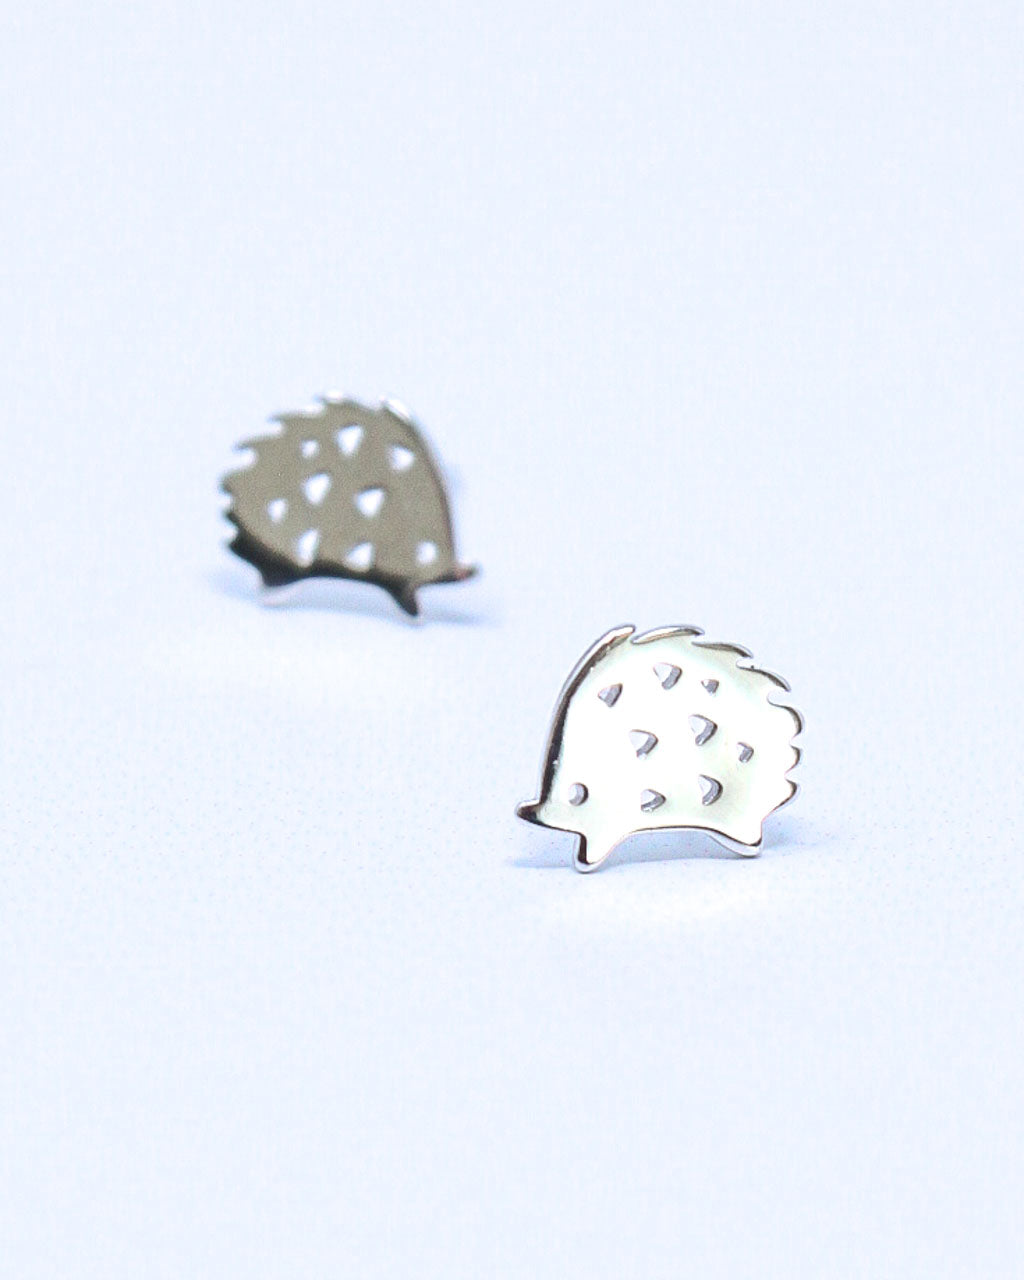 Hedgehog Earrings